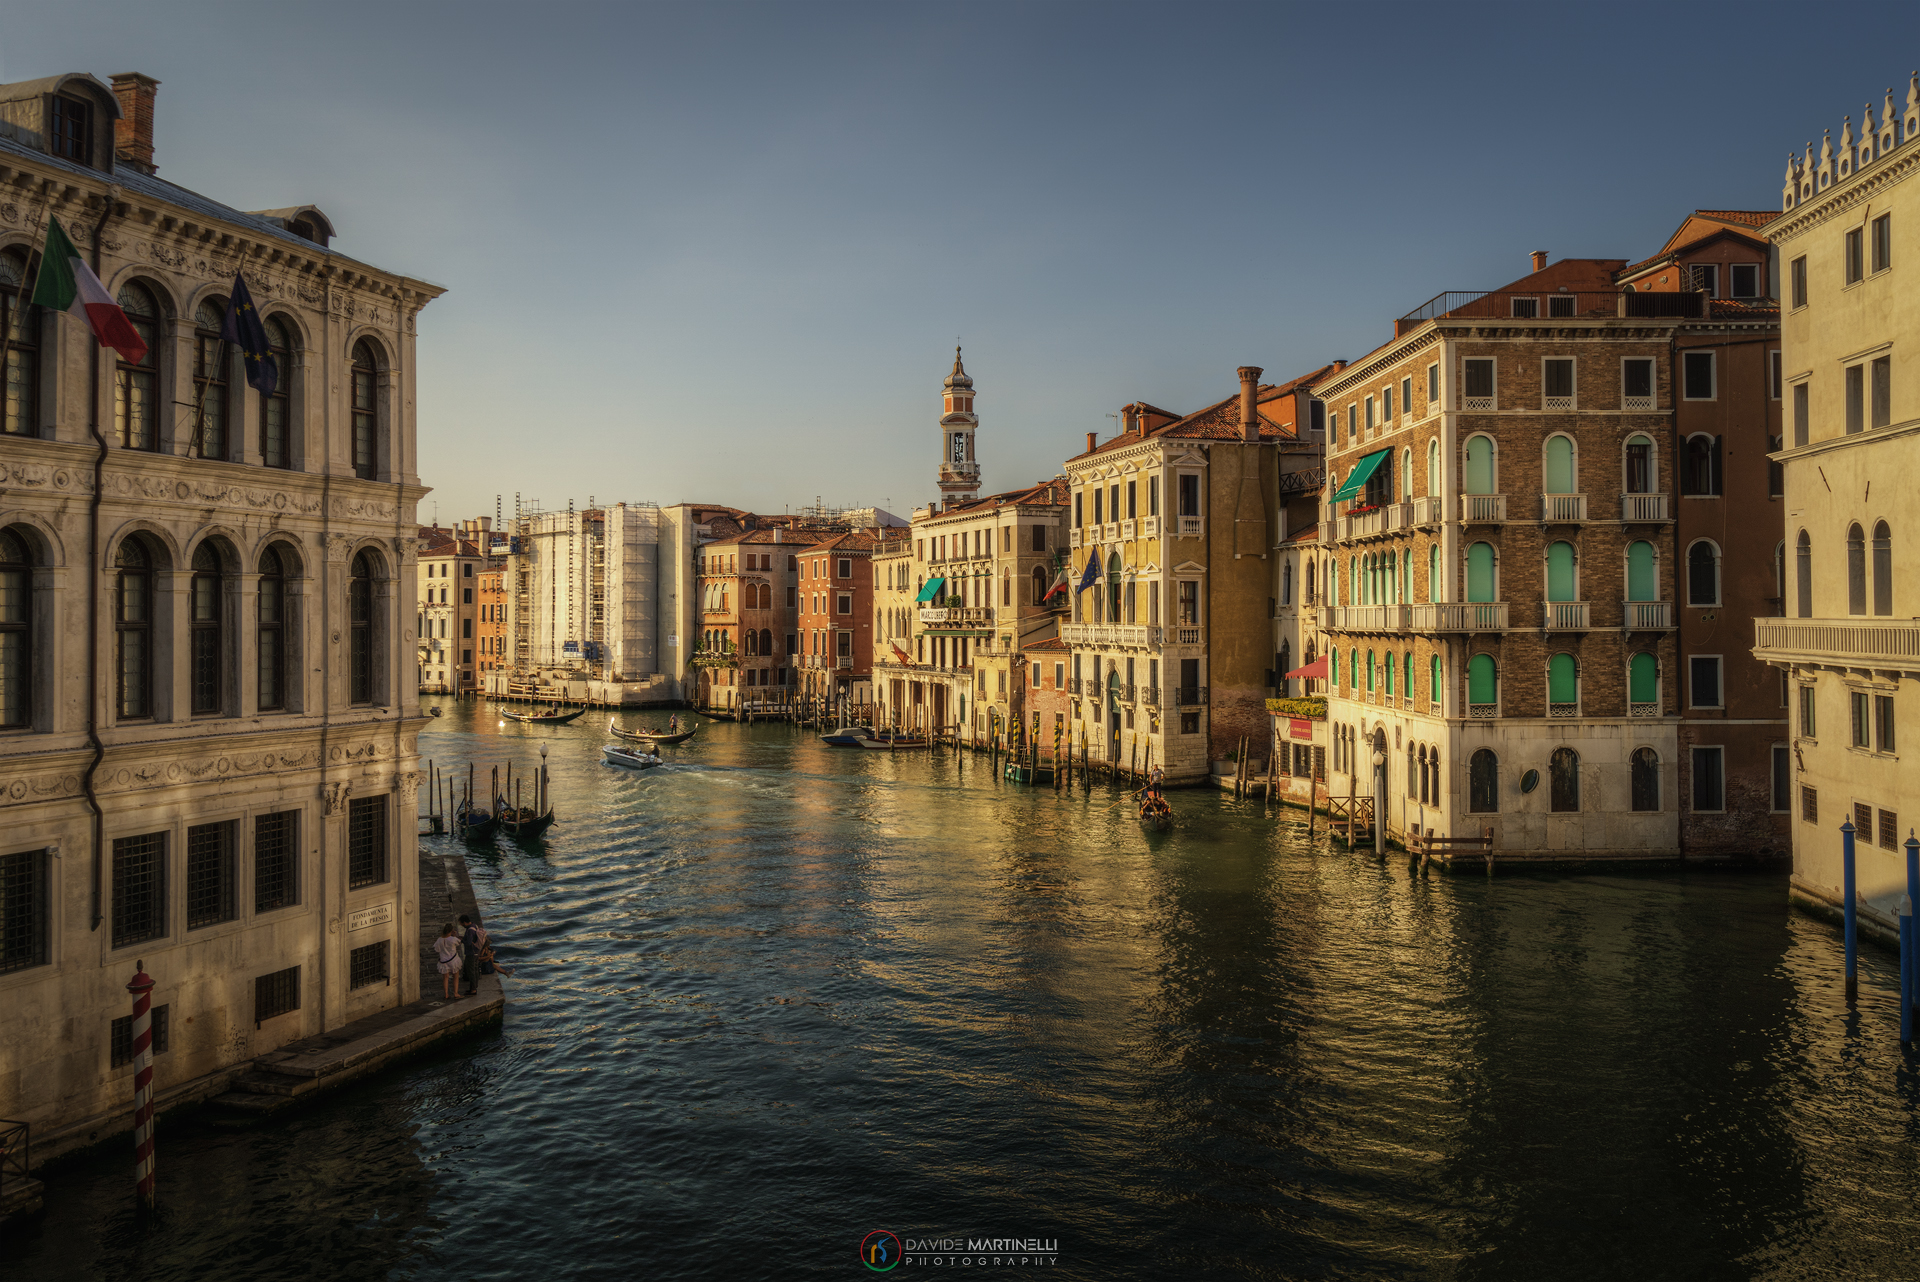 Venice - Grand Canal from the Rialto Bridge...